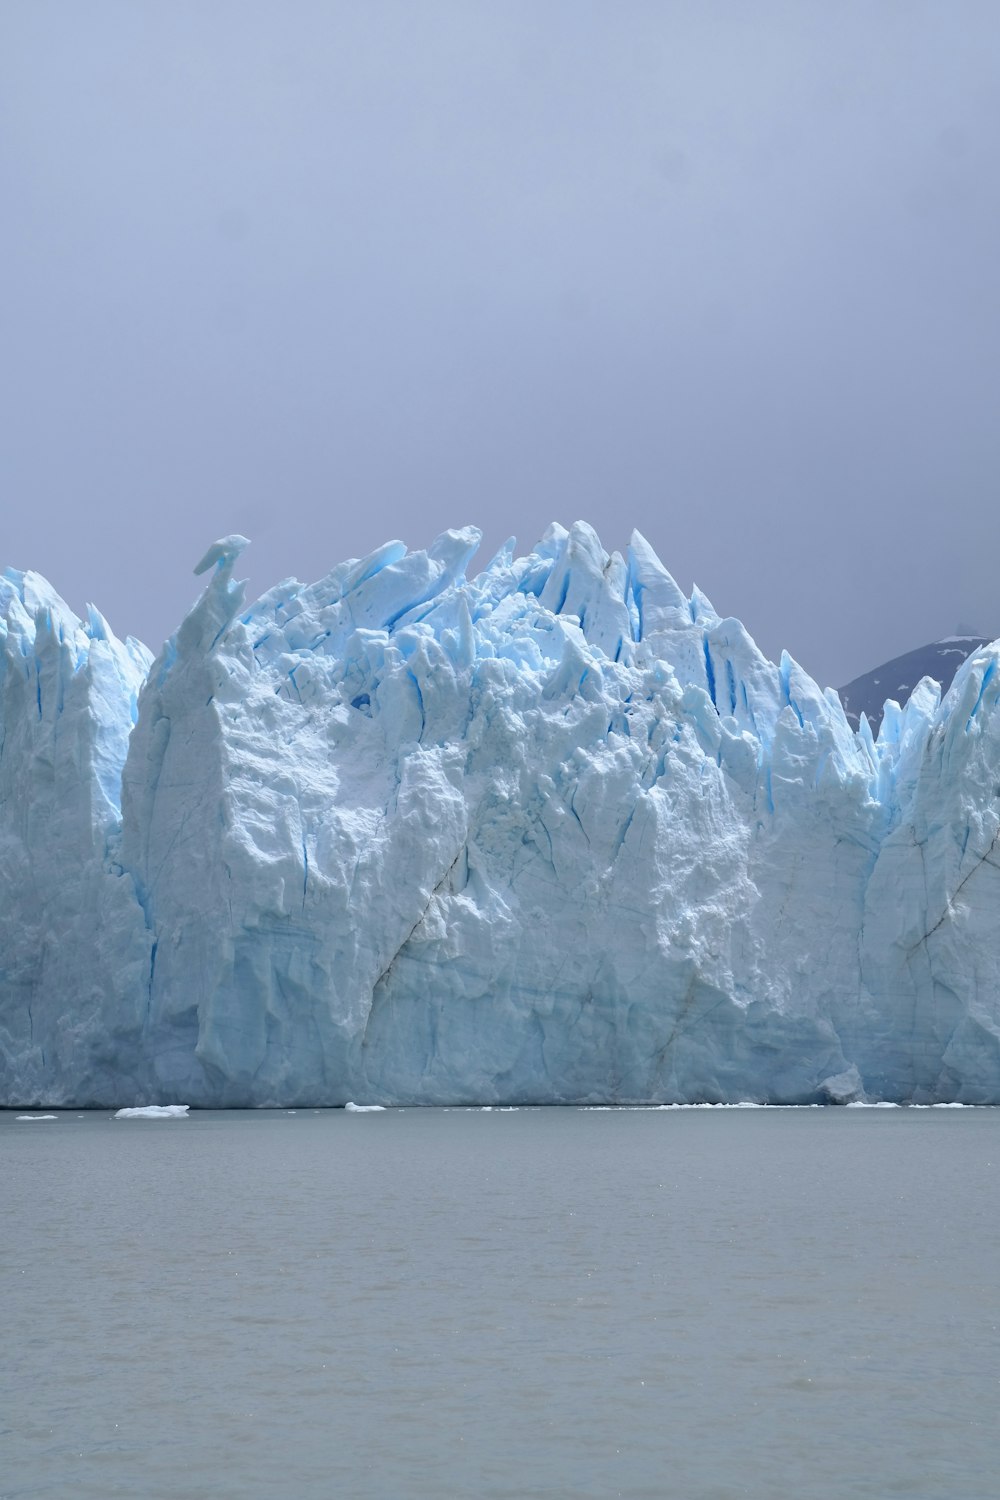 수역 한가운데에 있는 큰 빙산